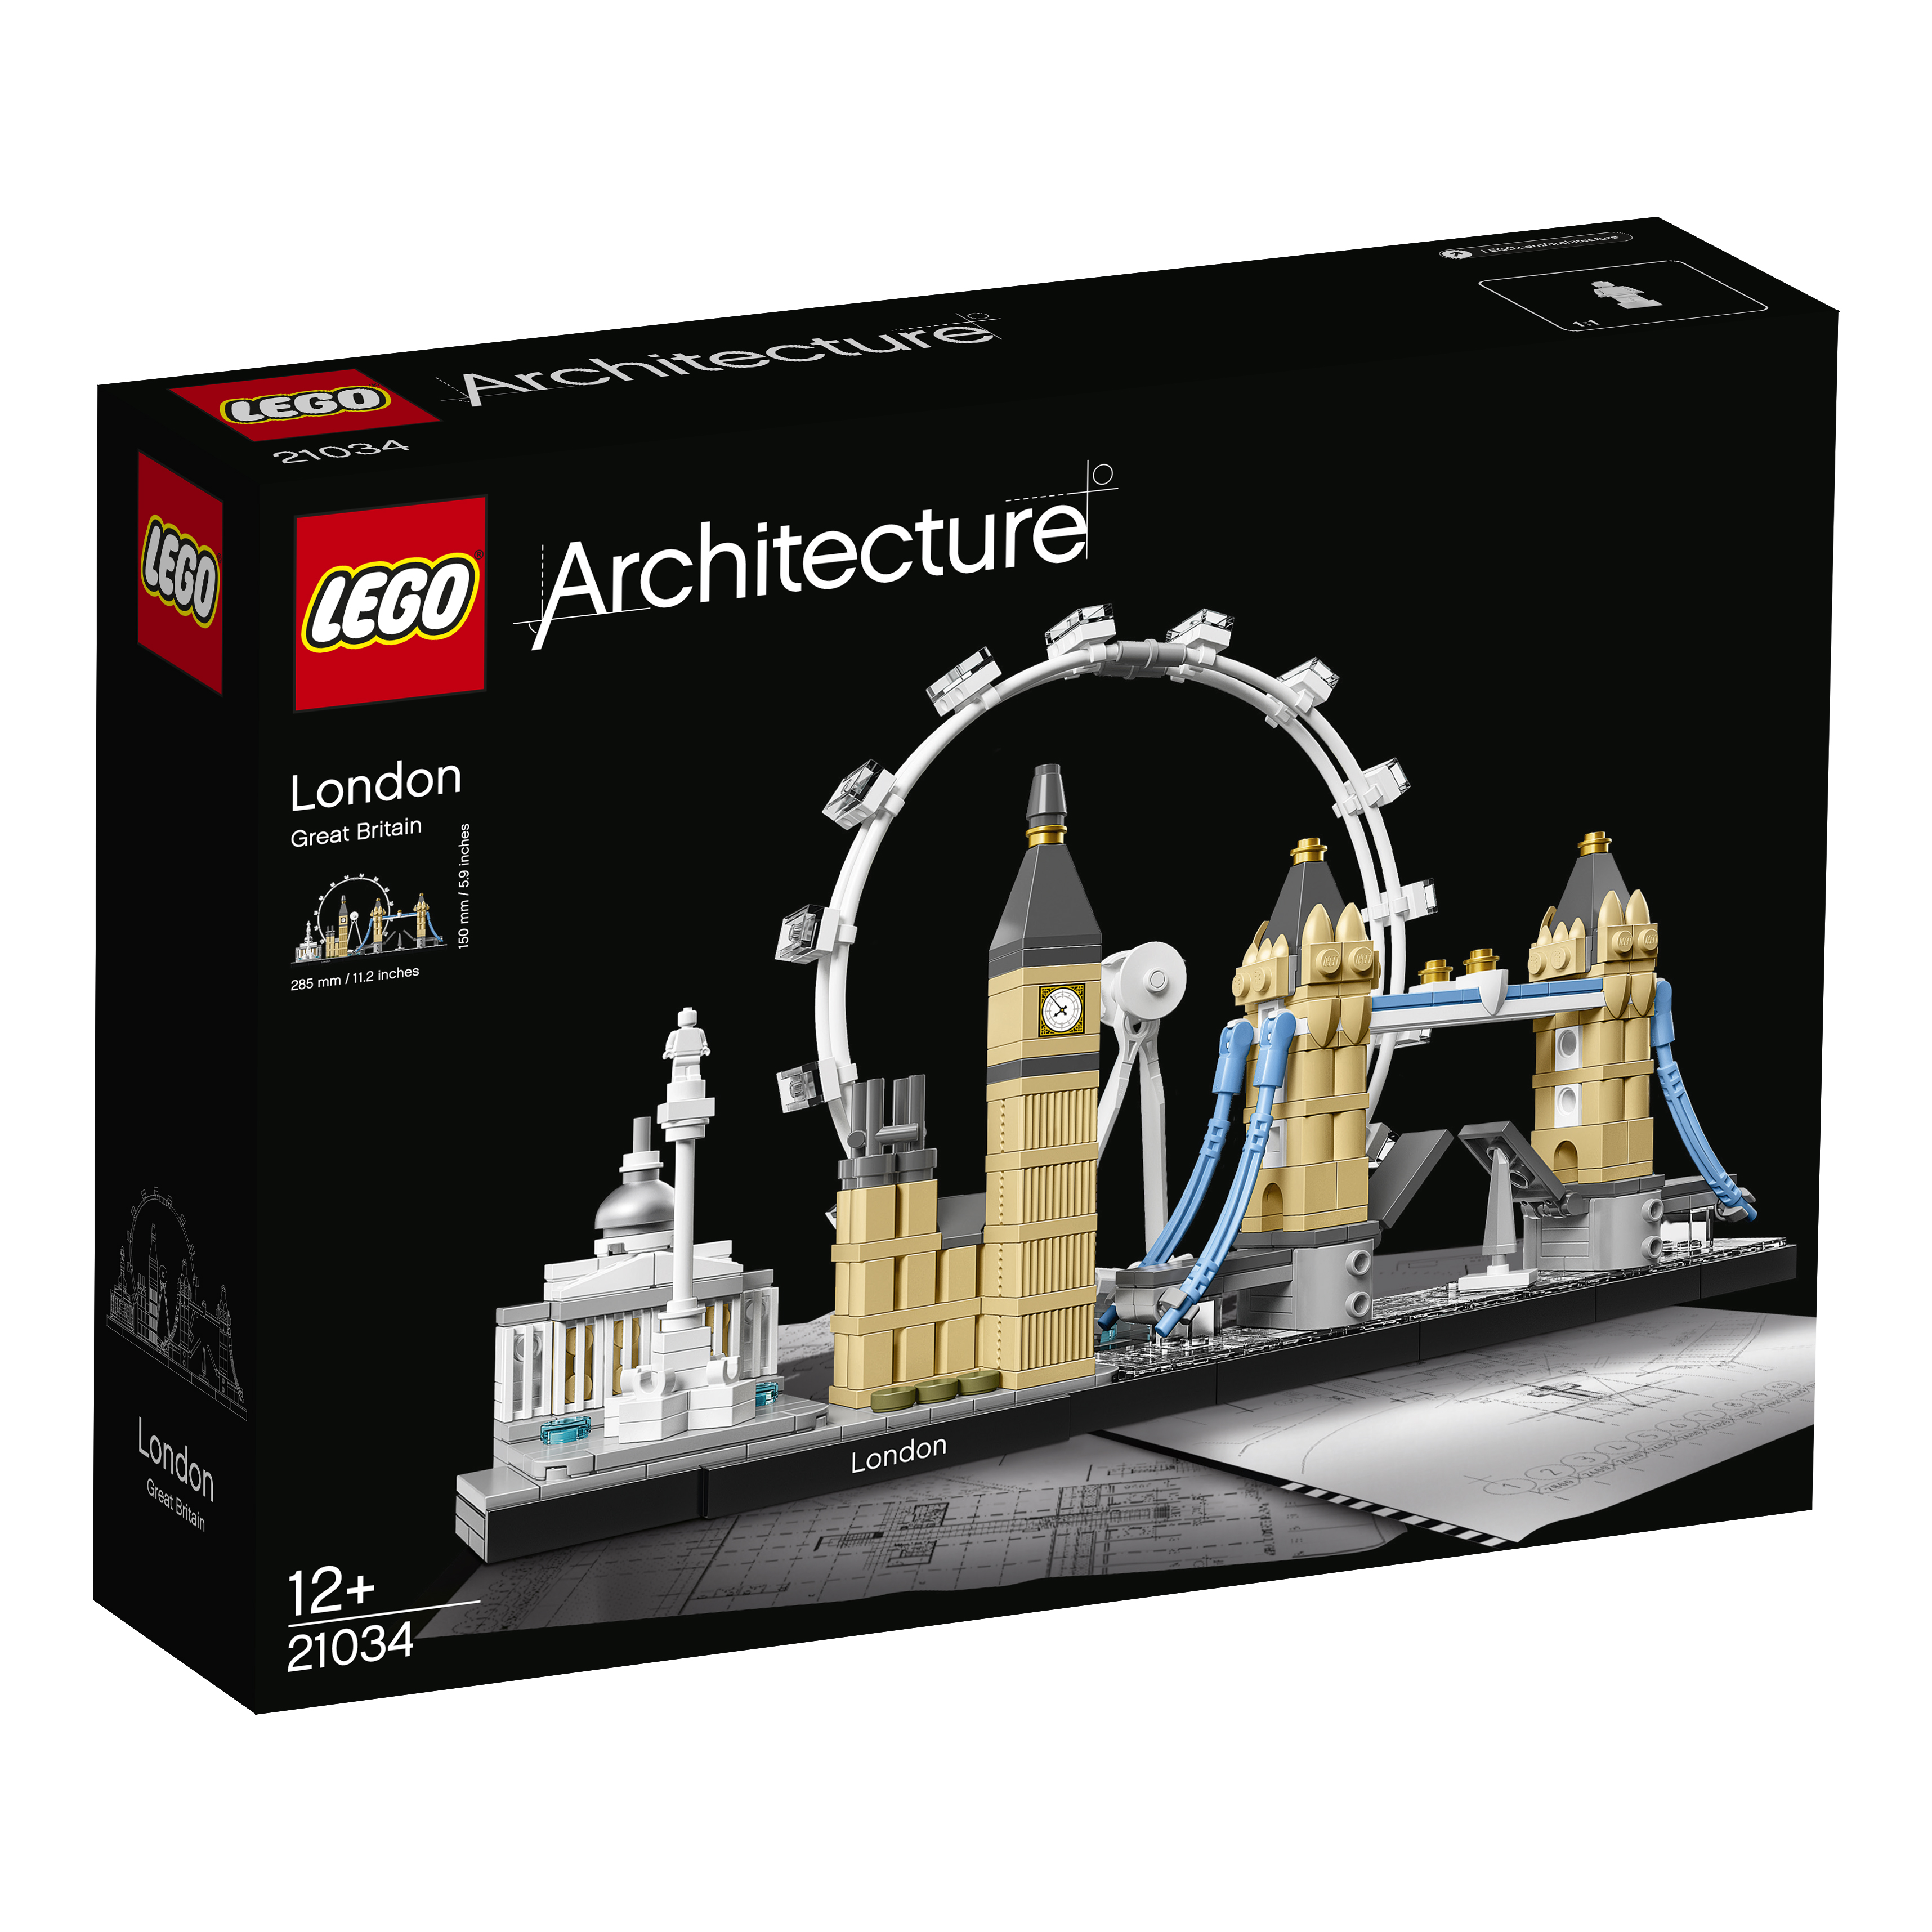 LEGO® Architecture 21034 London günstig kaufen | brickstore.at
